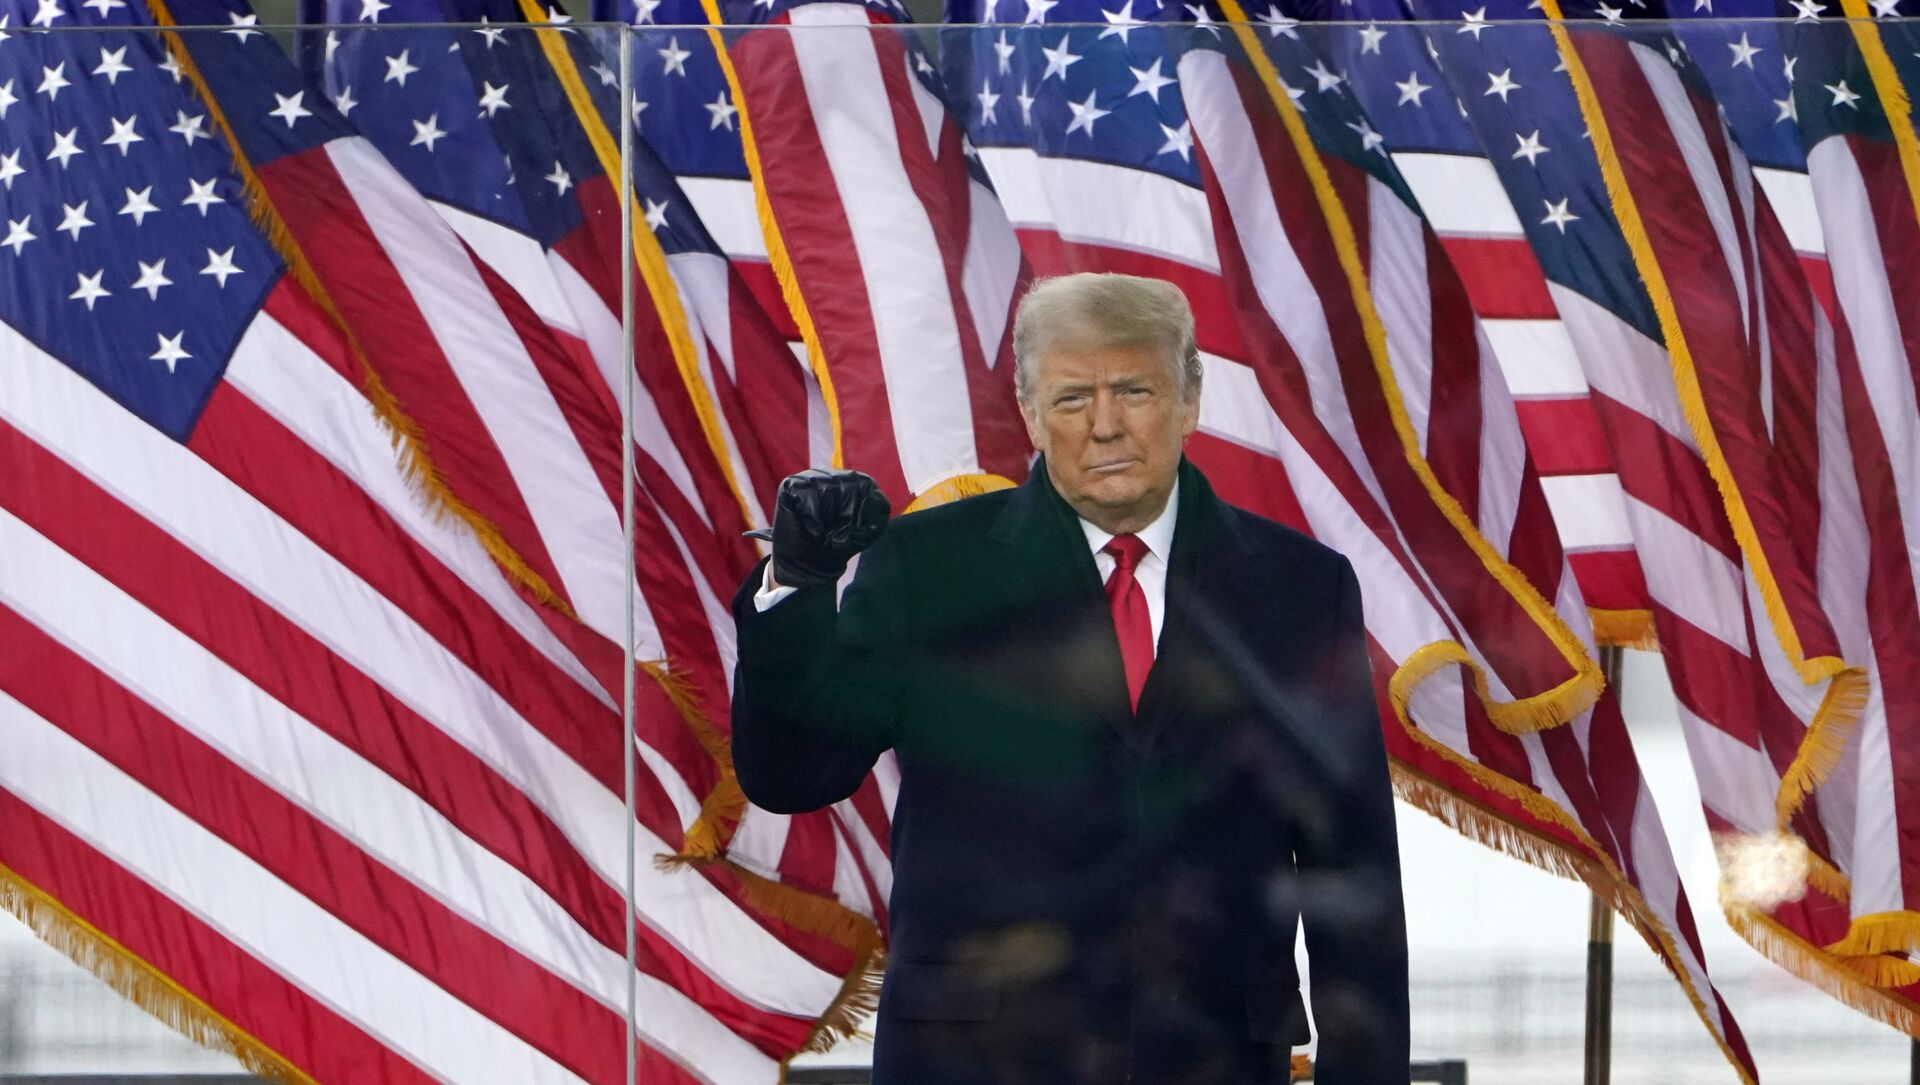 Tổng thống Donald Trump đến để phát biểu tại một cuộc biểu tình vào thứ Tư, ngày 6 tháng 1 năm 2021, ở Washington. (Ảnh AP / Jacquelyn Martin) - Sputnik Việt Nam, 1920, 15.07.2021